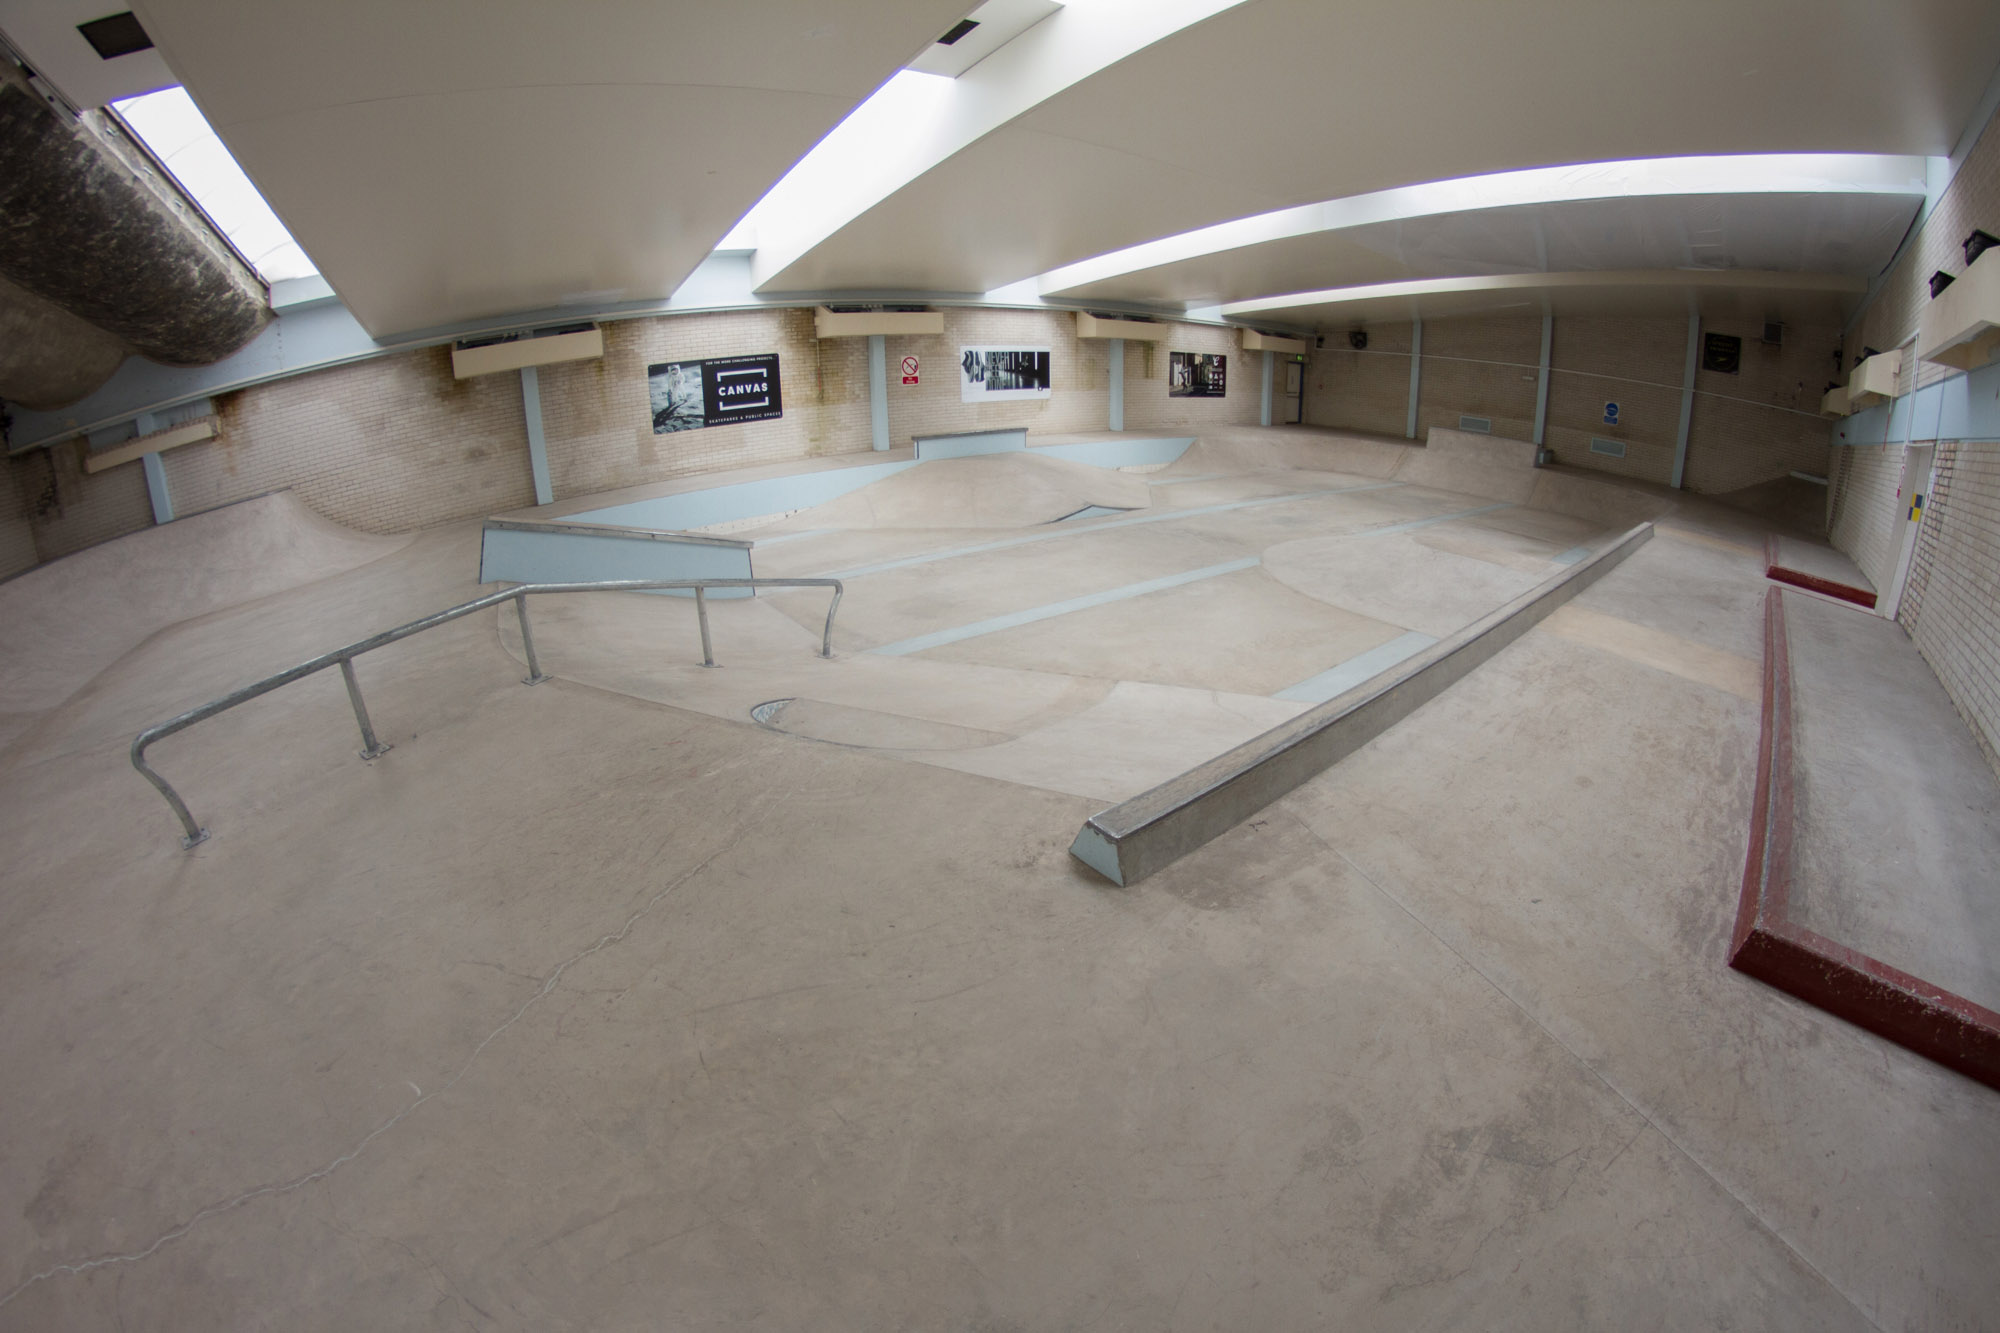 campus pool skatepark review tips skateboarding in bristol u k